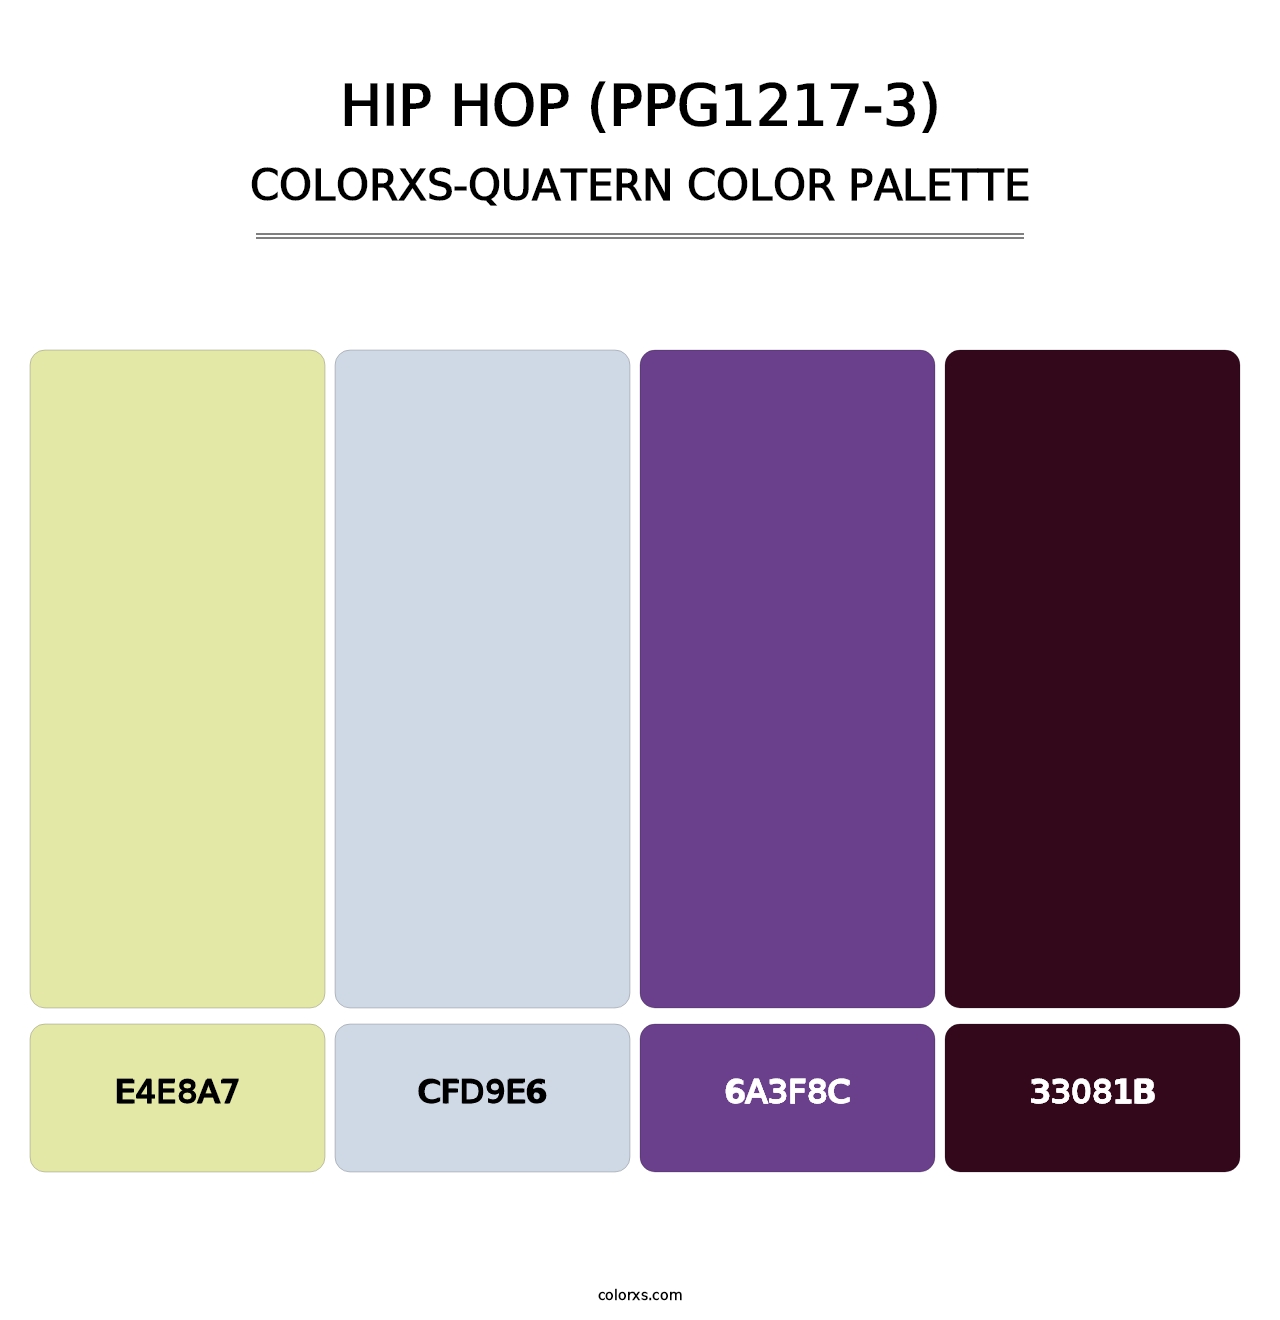 Hip Hop (PPG1217-3) - Colorxs Quatern Palette